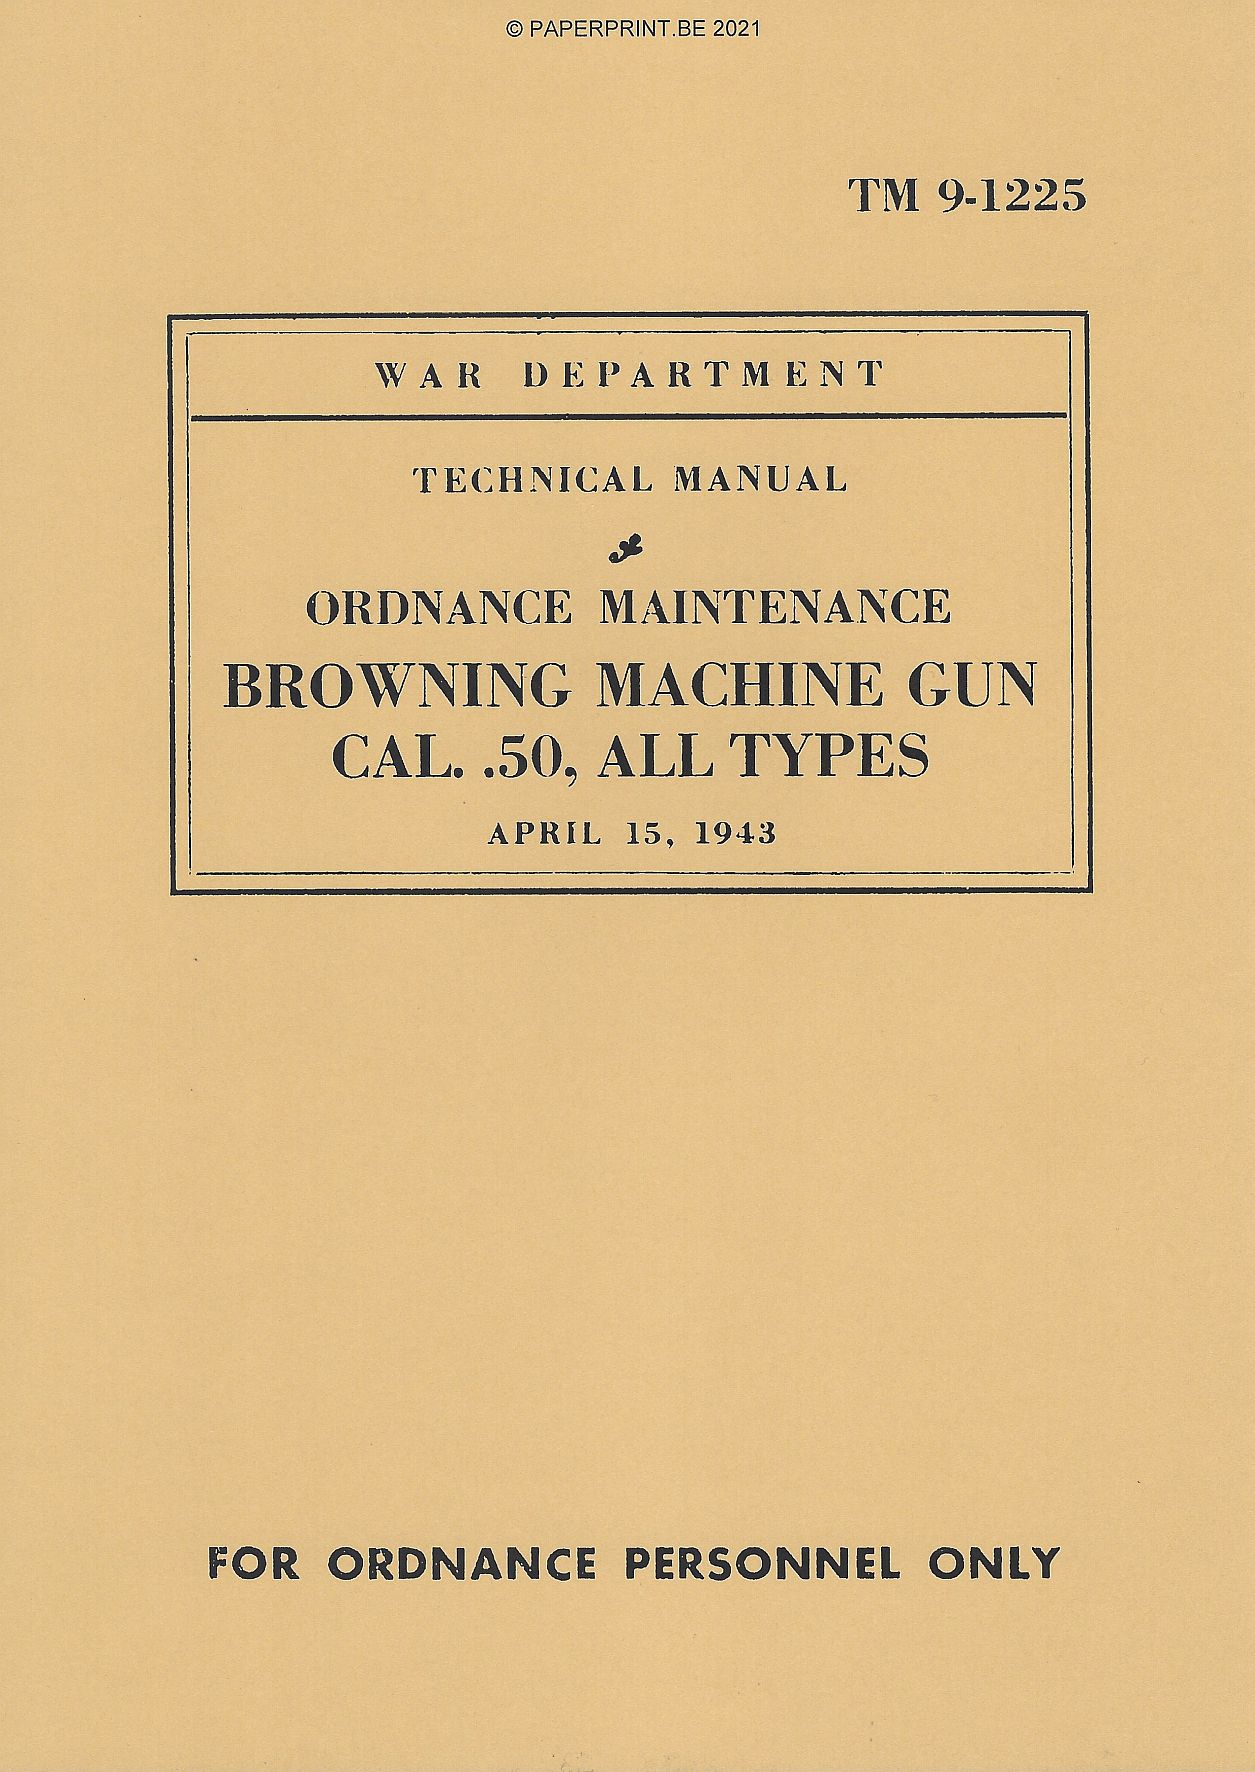 TM 9-1225 US BROWNING MACHINE GUN CAL. .50